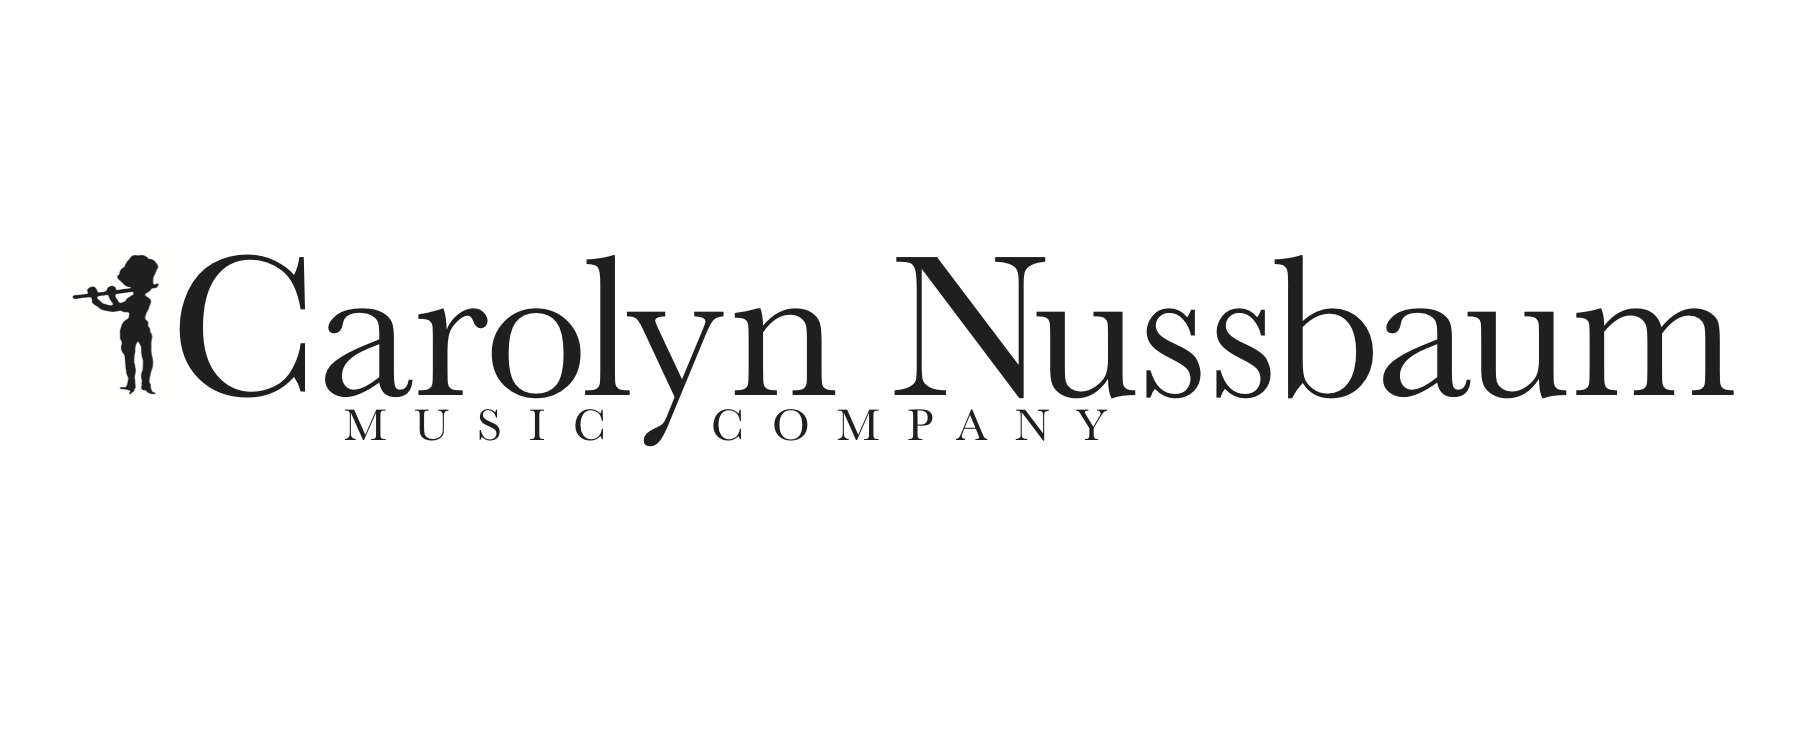 Carolyn Nussbaum Music Company logo